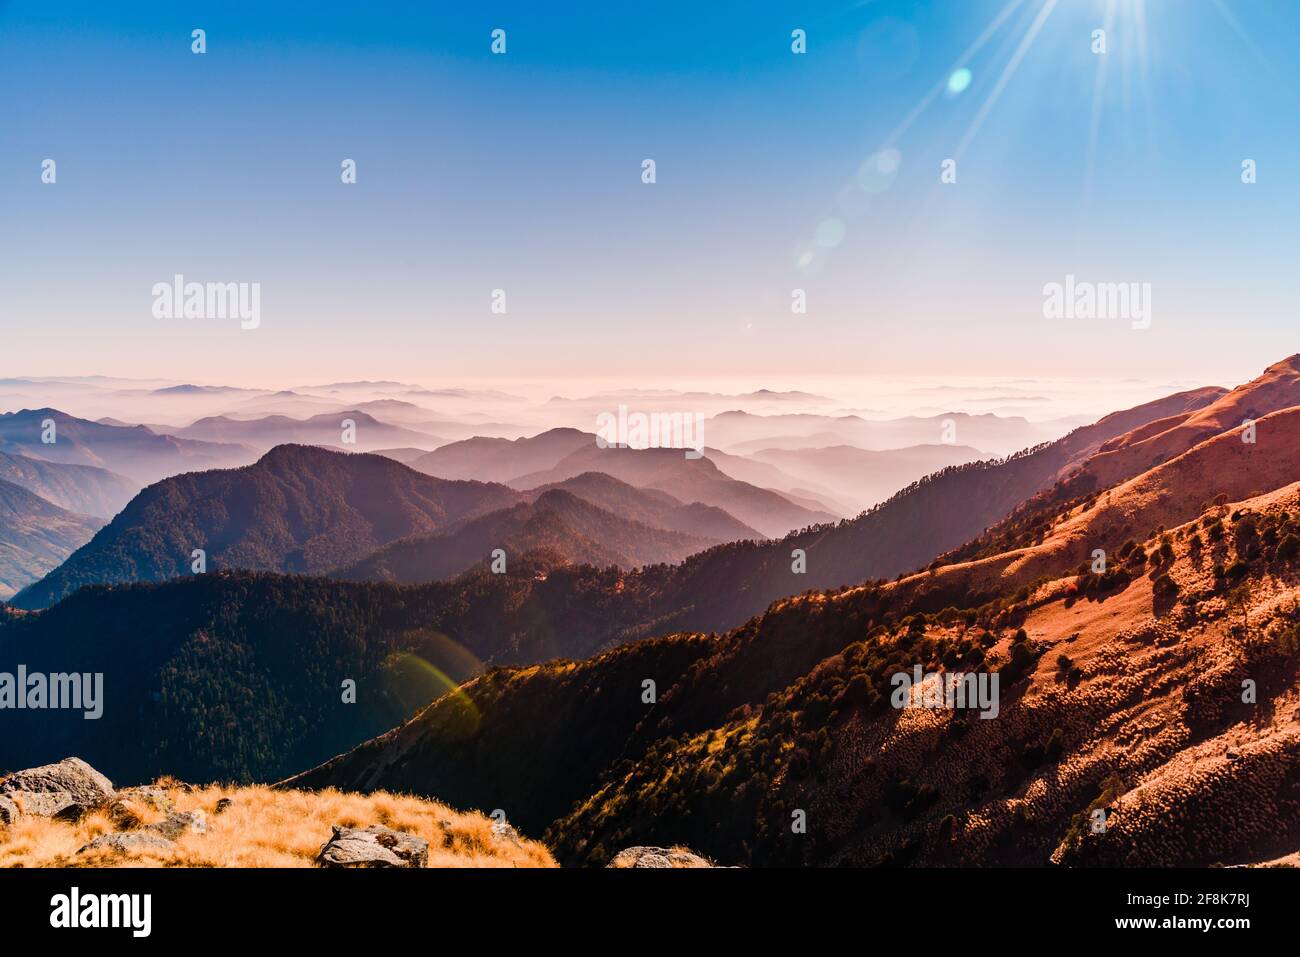 Vista della catena montuosa dell'Himalaya con silhouette visibili attraverso la colorata nebbia dalla cima del percorso di trekking Khalia. La cima Khalia si trova ad un'altitudine di 3500m h. Foto Stock